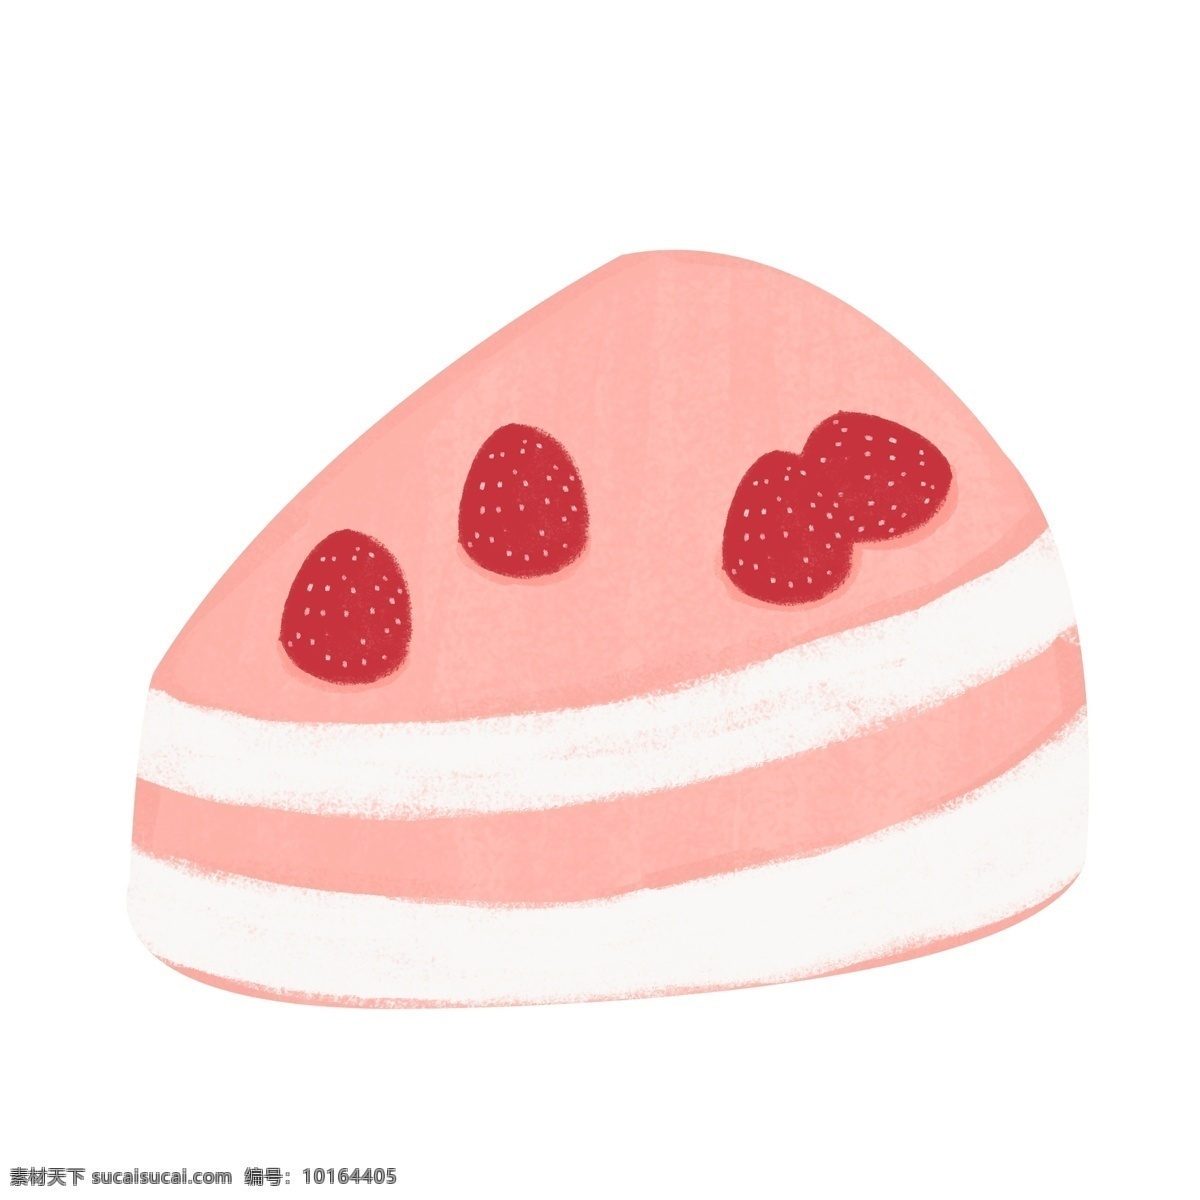 简约 水果 蛋糕 矢量 元素 水果蛋糕 爱情甜品 蛋糕插图 手绘 爱情 草莓 草莓蛋糕 甜点 矢量蛋糕 卡通蛋糕